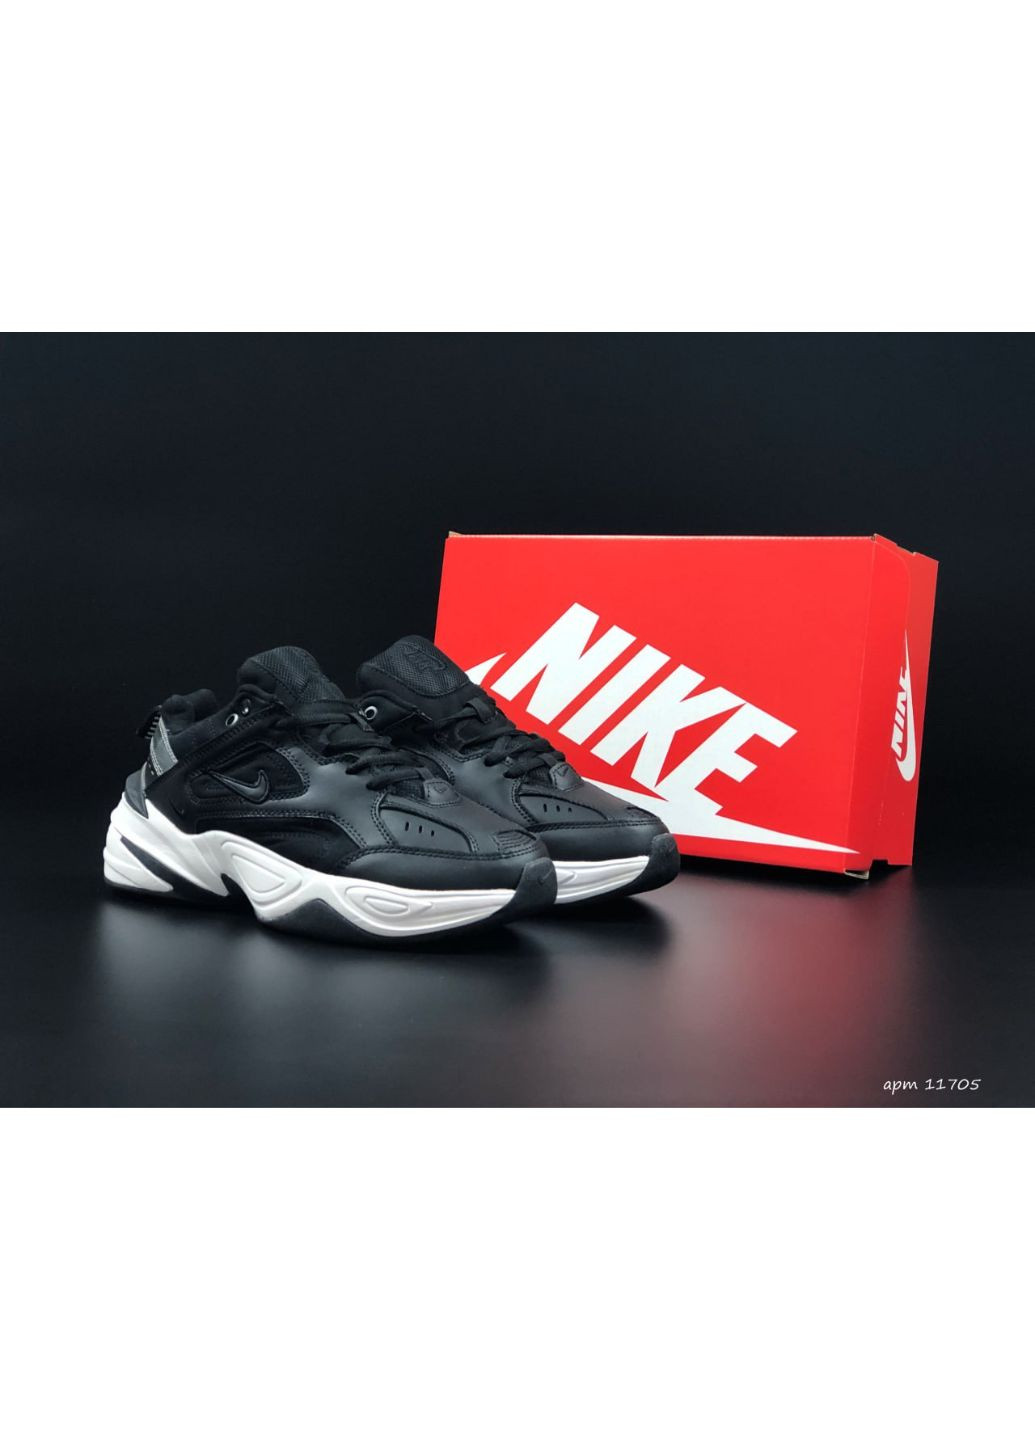 Черно-белые демисезонные женские кроссовки черные с белым серым «no name» Nike M2k Tekno